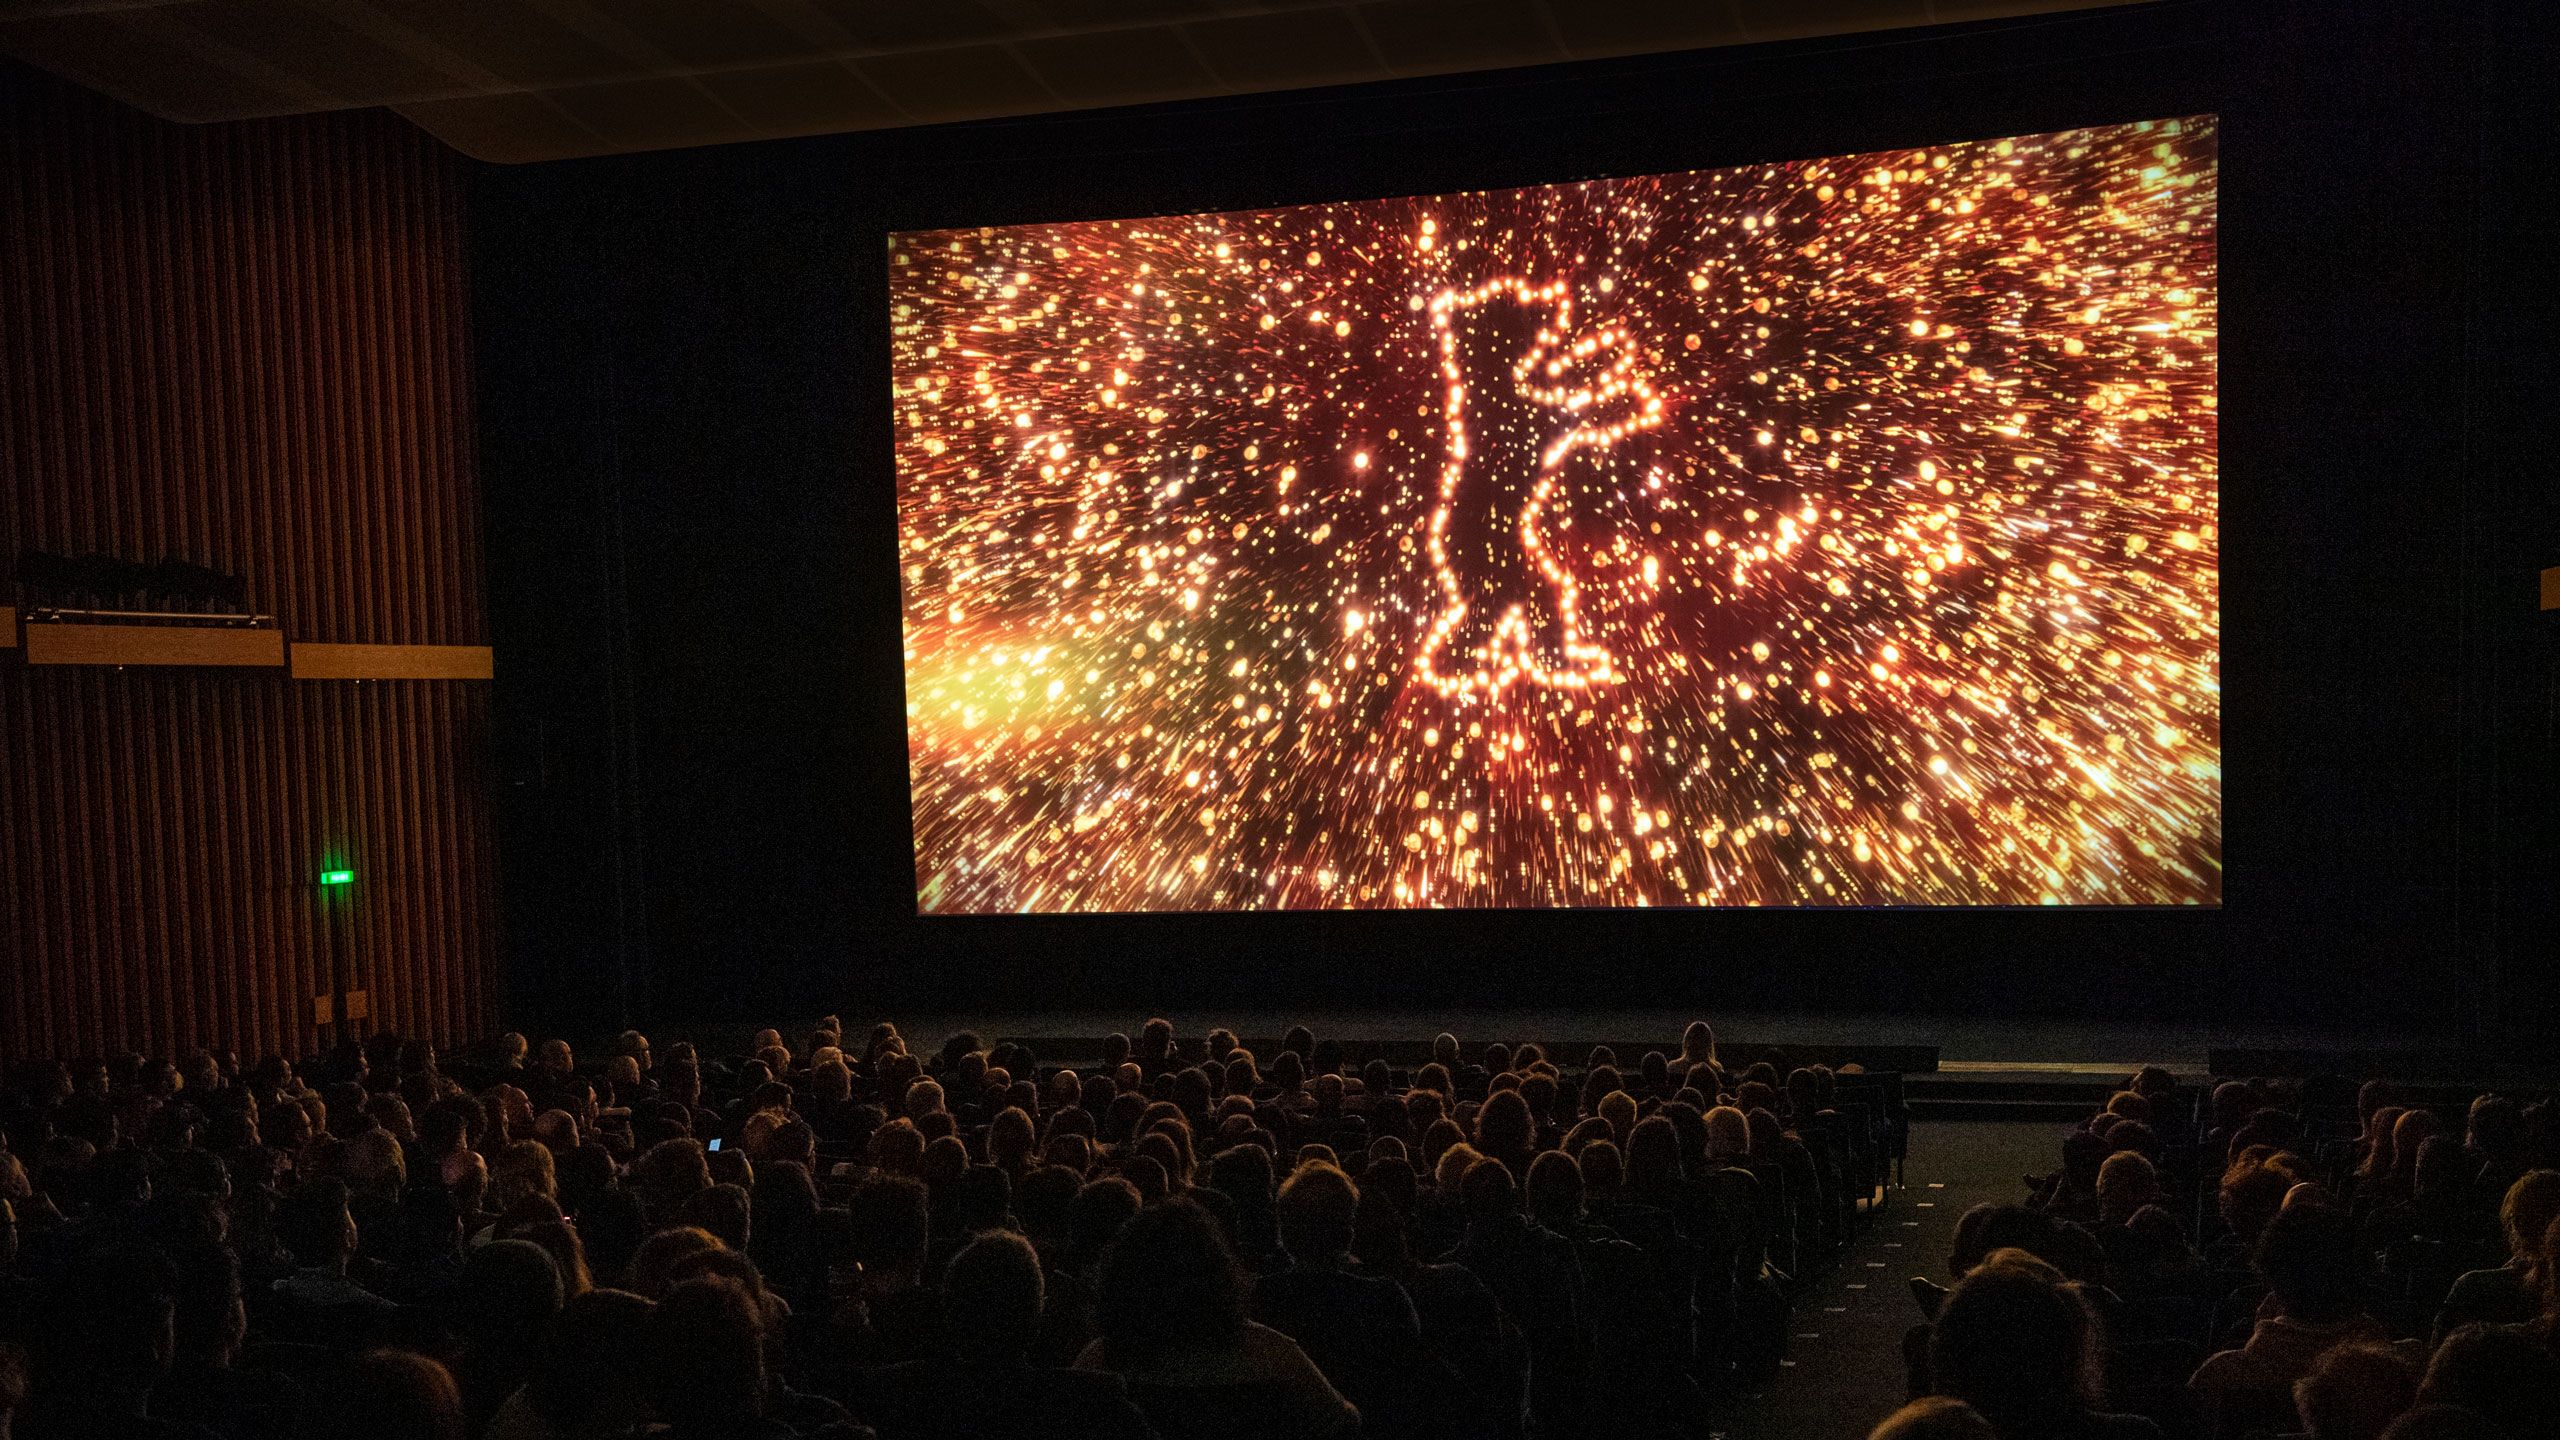 Verdunkelter Kinosaal, auf der Leinwand der funkelnde Berlinale-Bär aus dem Berlinale-Vorspann